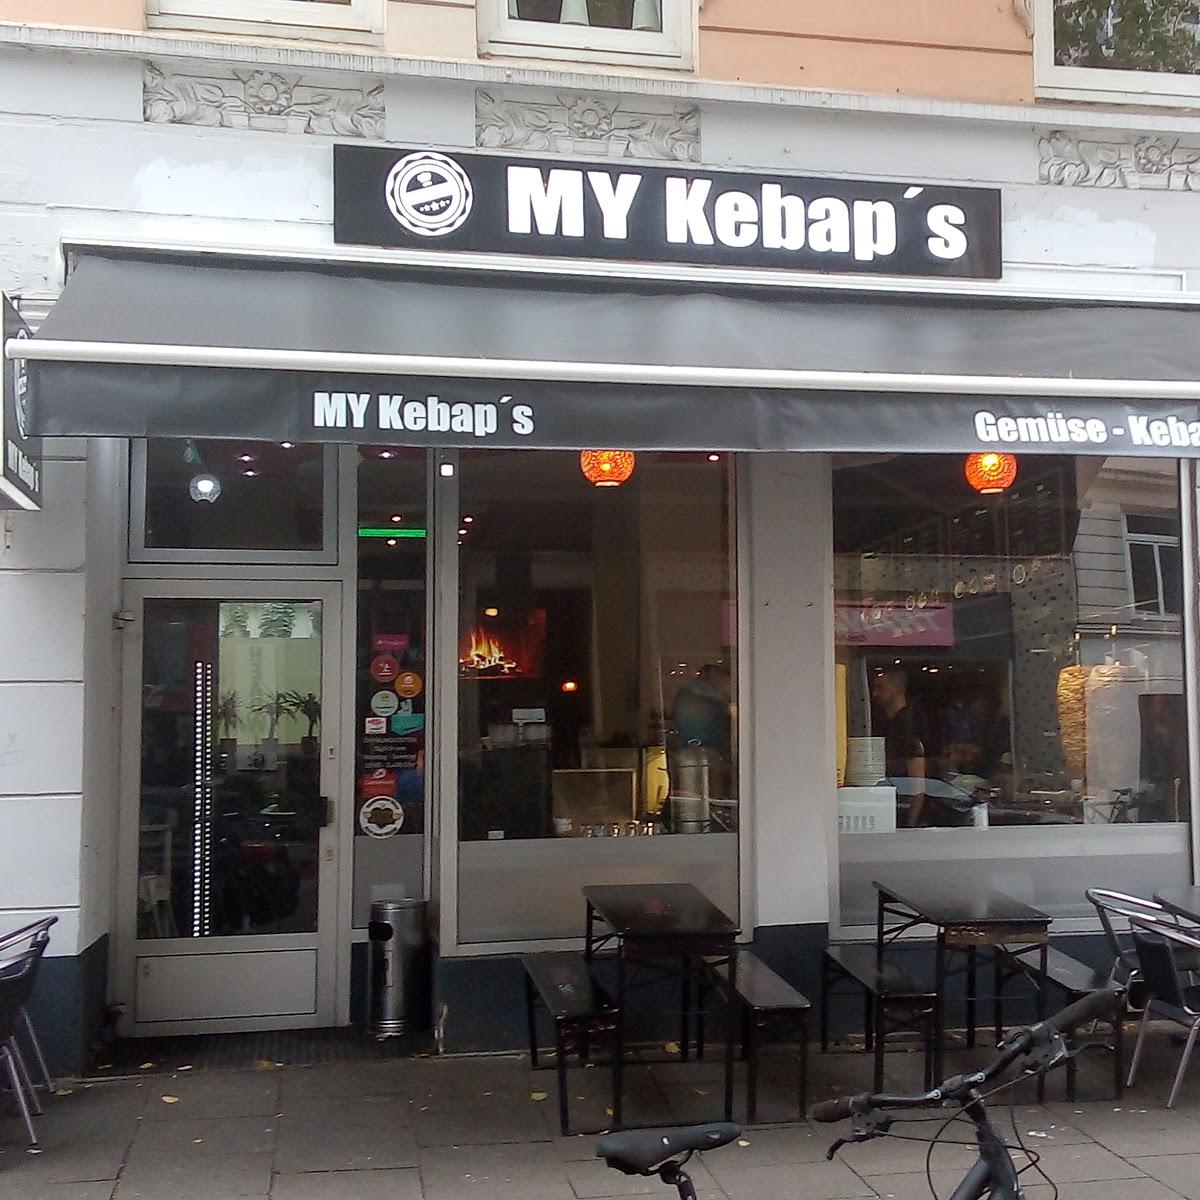 Restaurant "MY Kebap